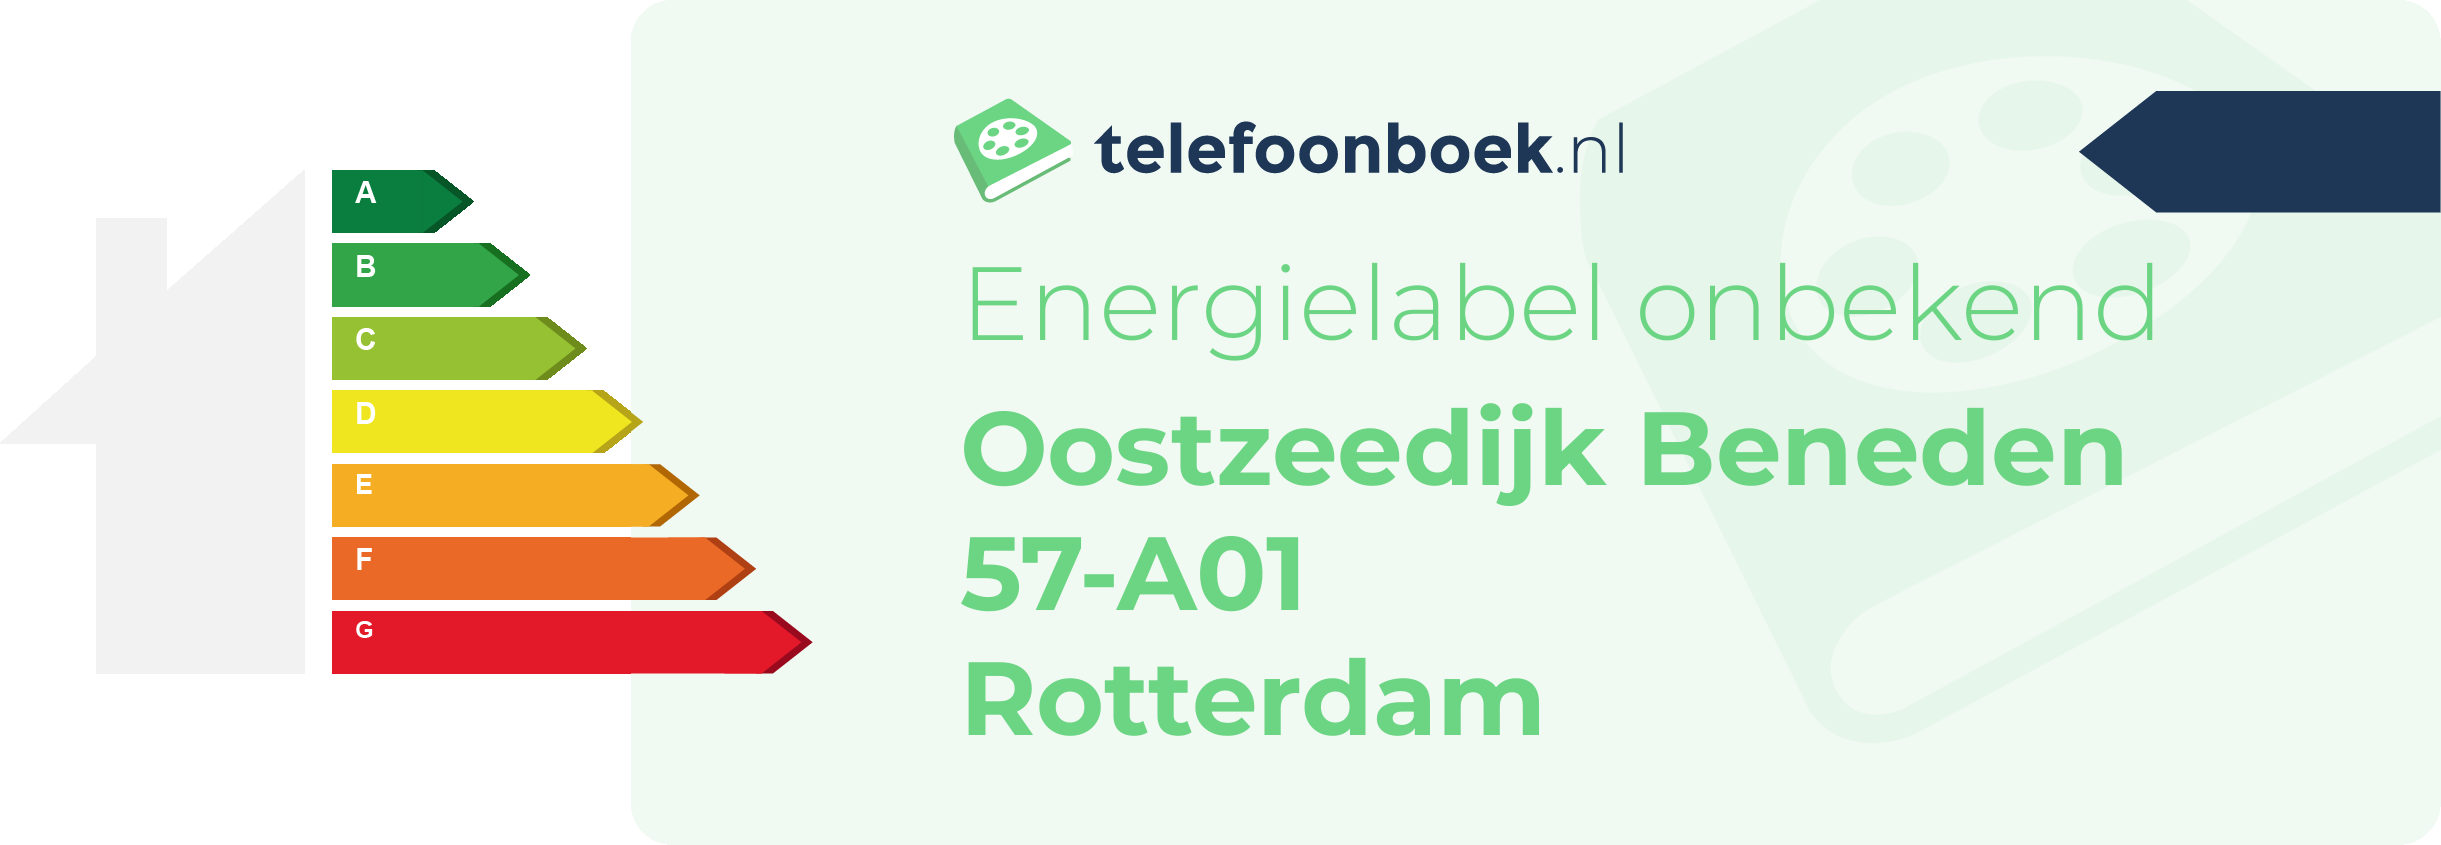 Energielabel Oostzeedijk Beneden 57-A01 Rotterdam